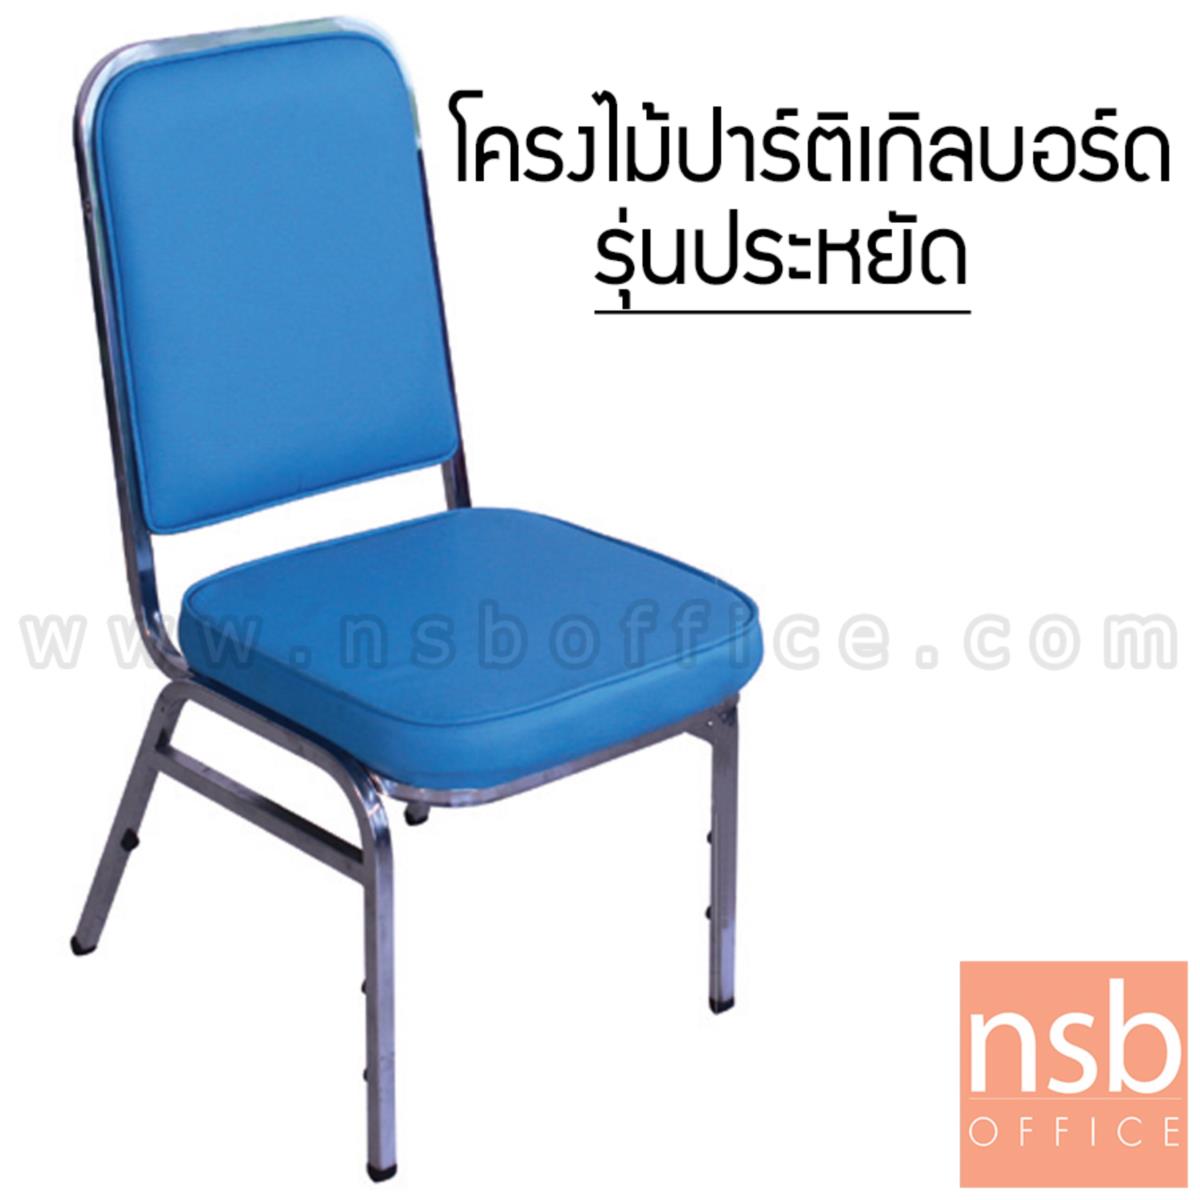 B08A083:เก้าอี้อเนกประสงค์จัดเลี้ยง รุ่น Beatrix (บรีทริกซ์) ขนาด 90H cm. ขาเหล็ก 